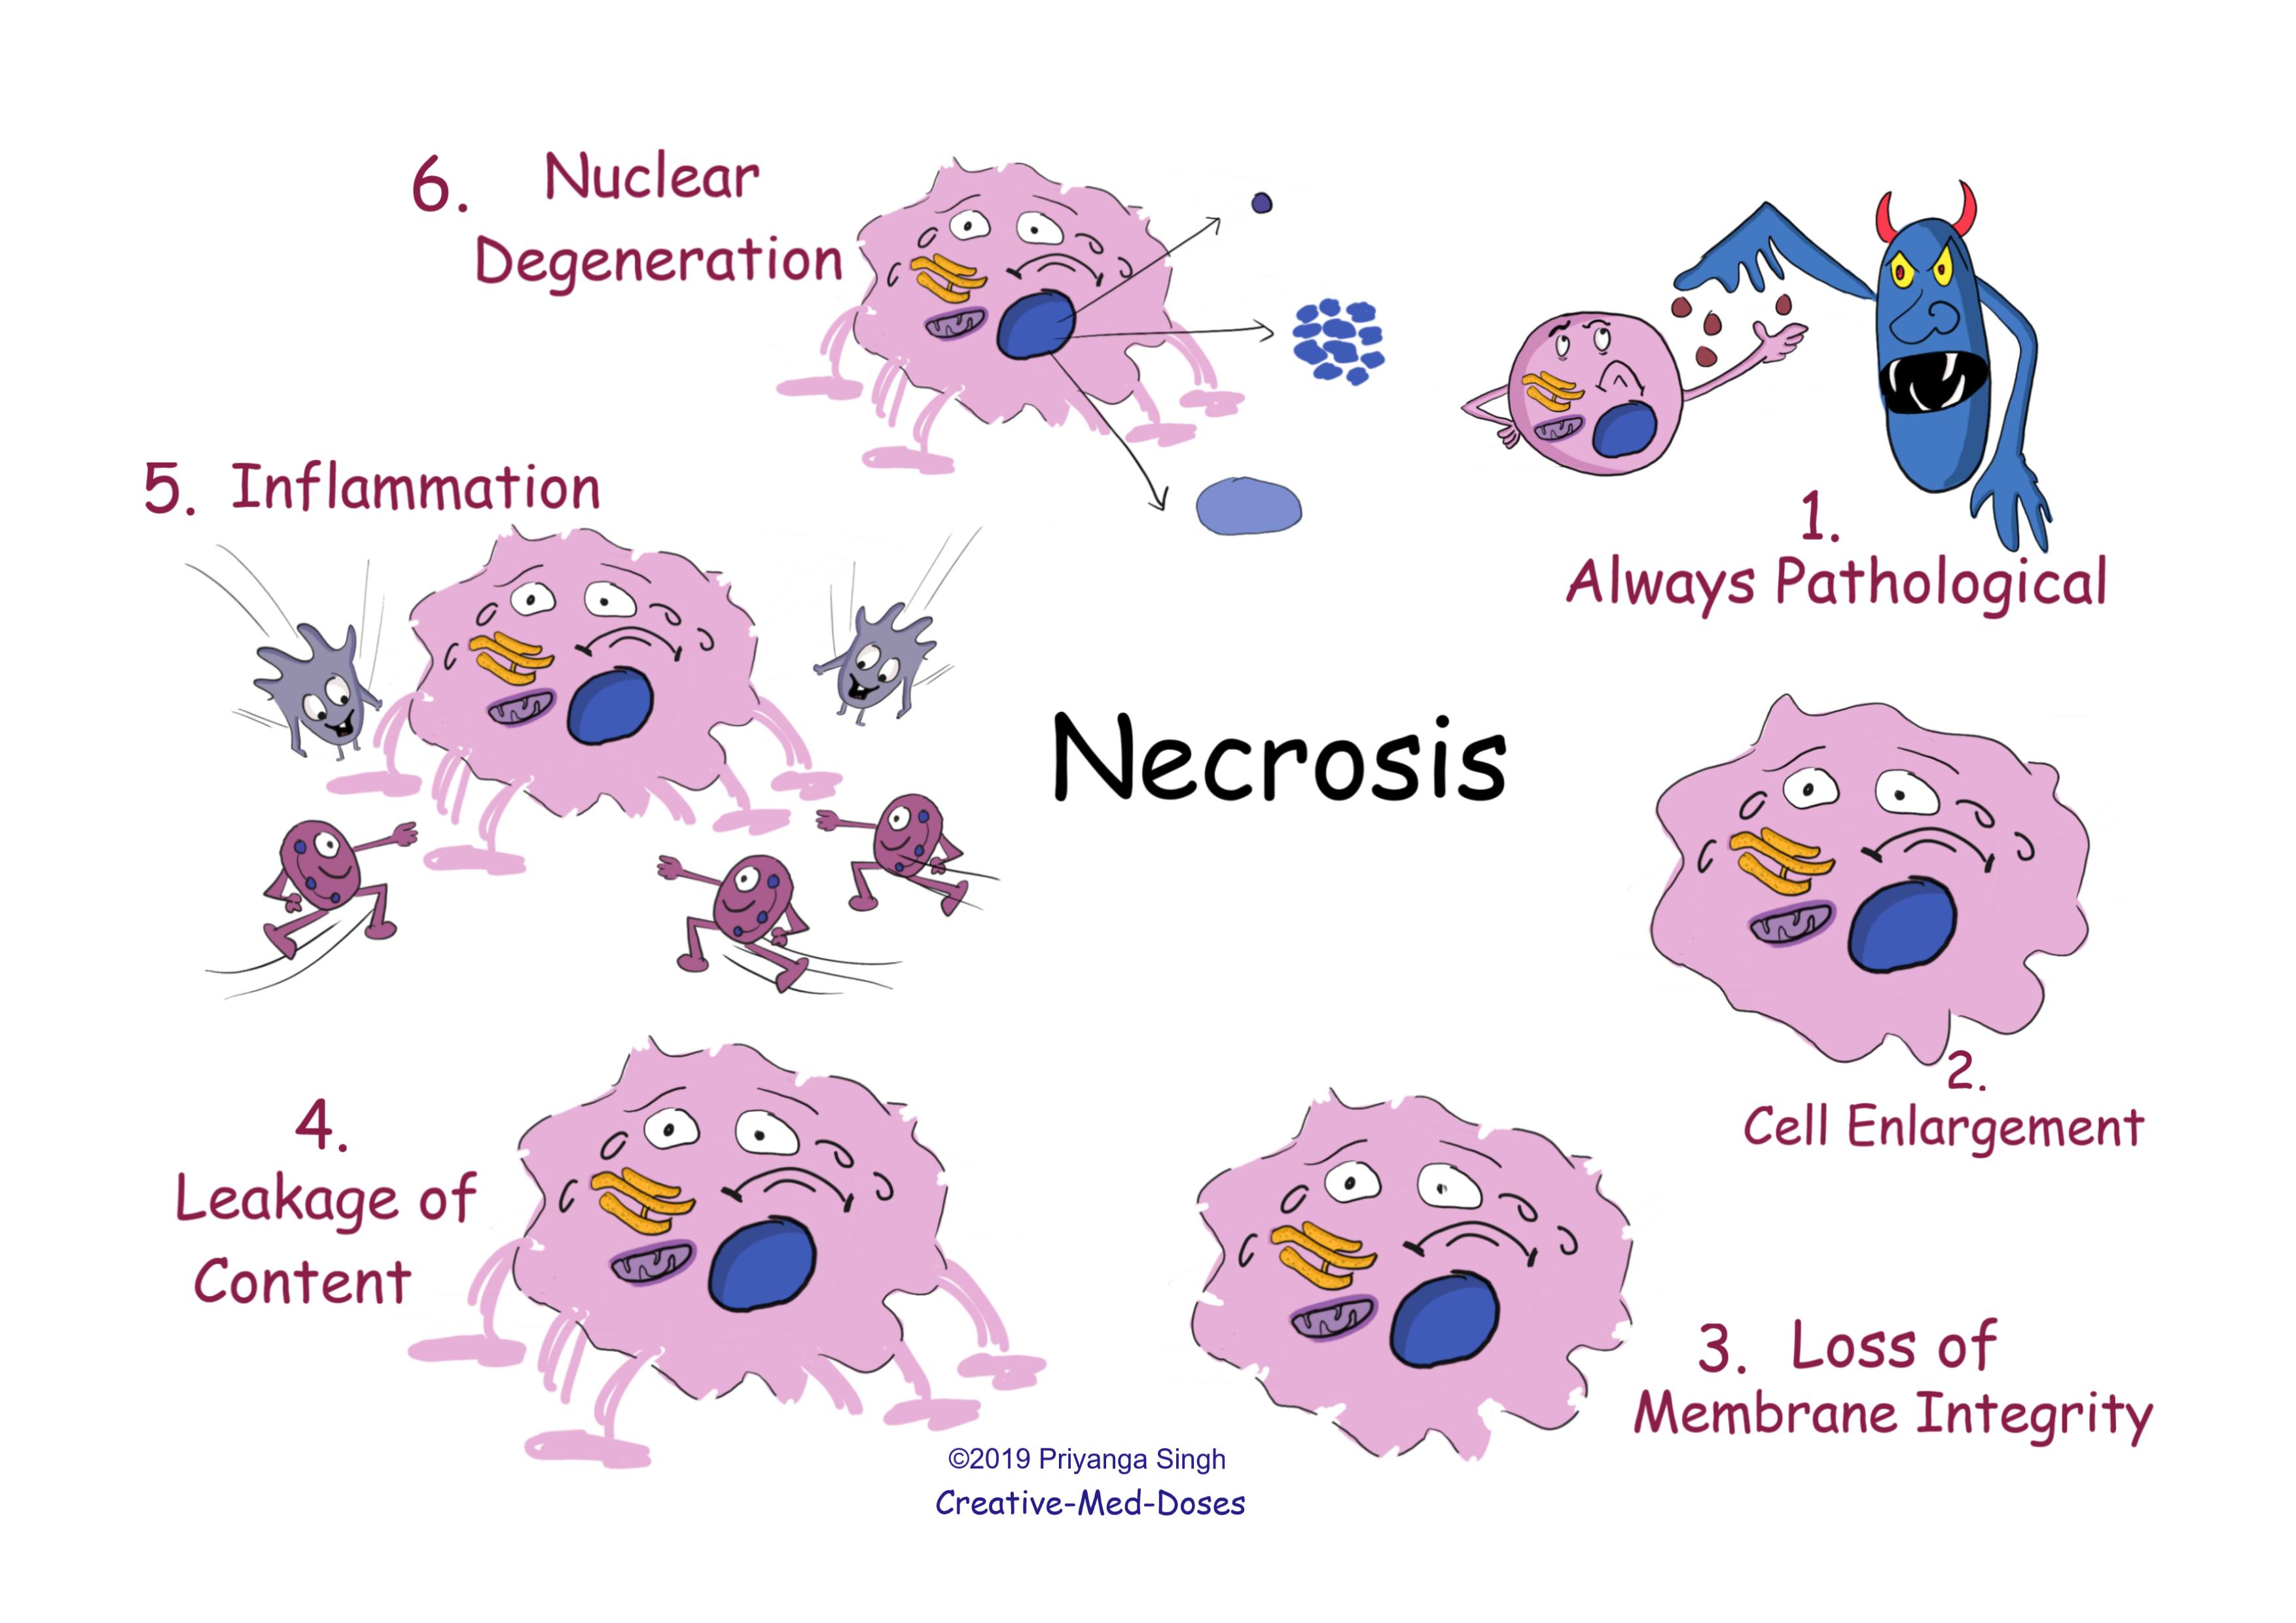 Necrosis main features
Necrosis VS apoptosis  